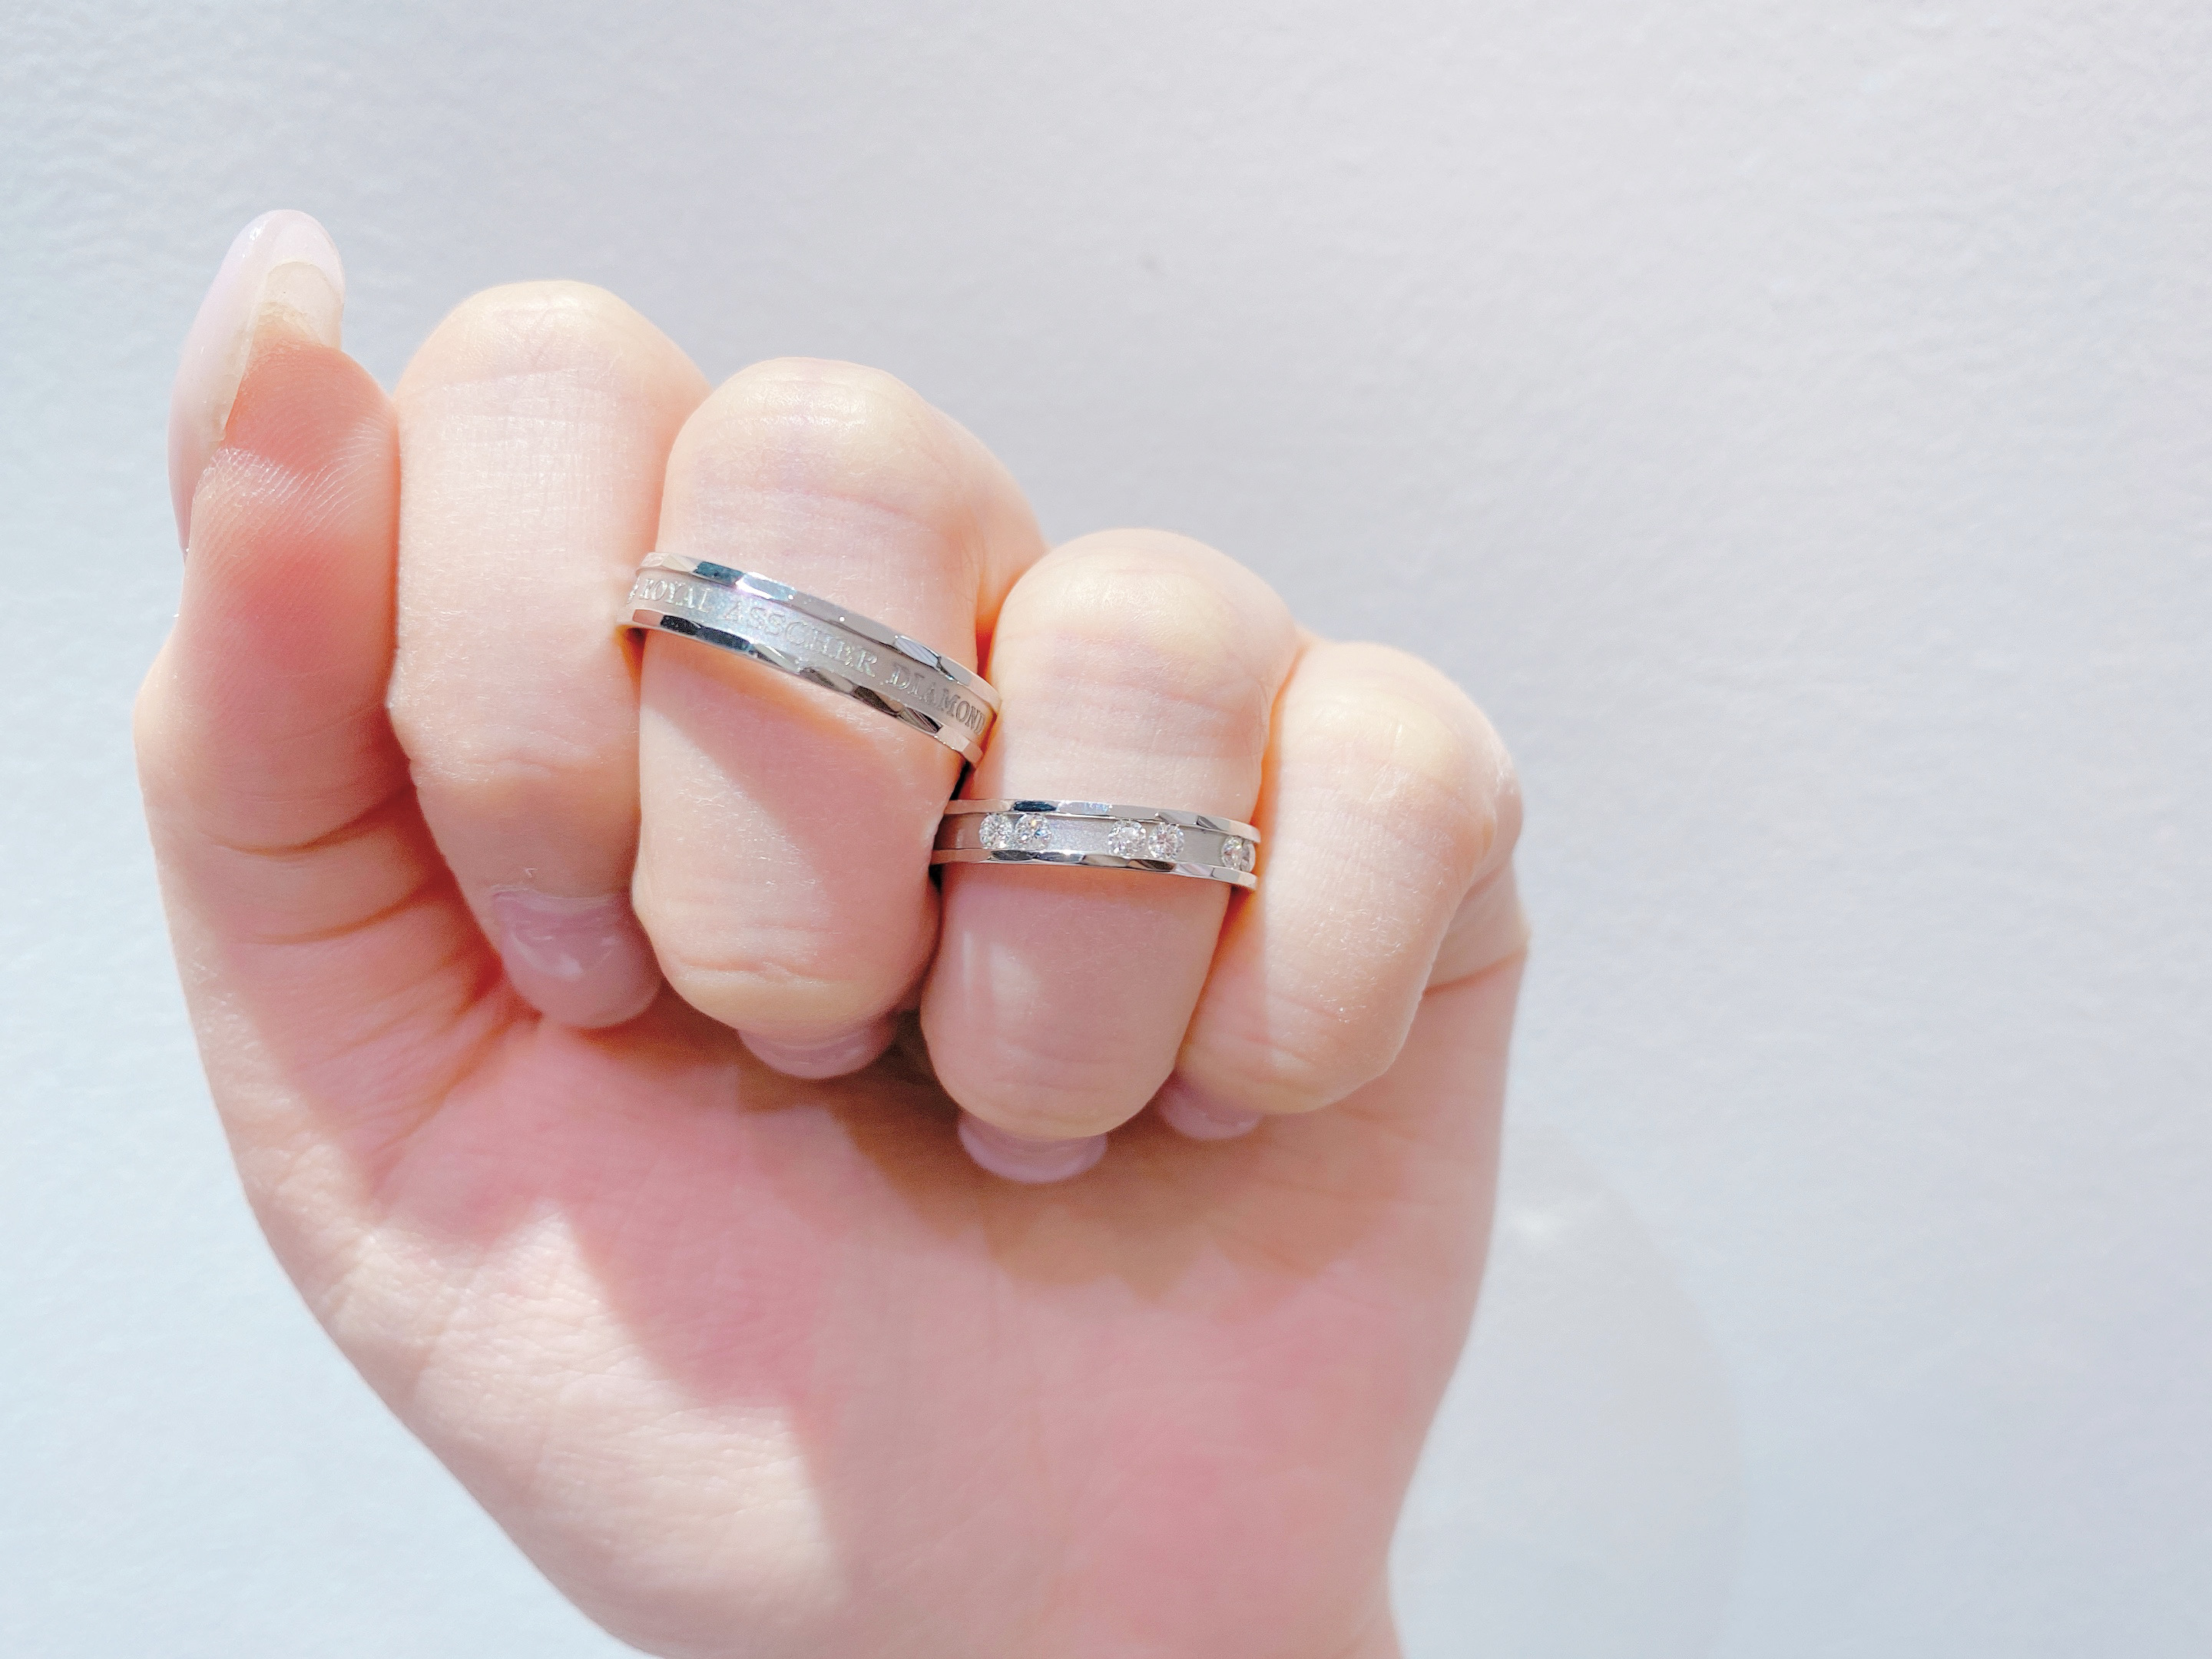 福井市ベル かわいいは嫌 男性に人気のかっこいい結婚指輪をご紹介 Jewelry Story ジュエリーストーリー ブライダル情報 婚約指輪 結婚指輪 結婚式場情報サイト